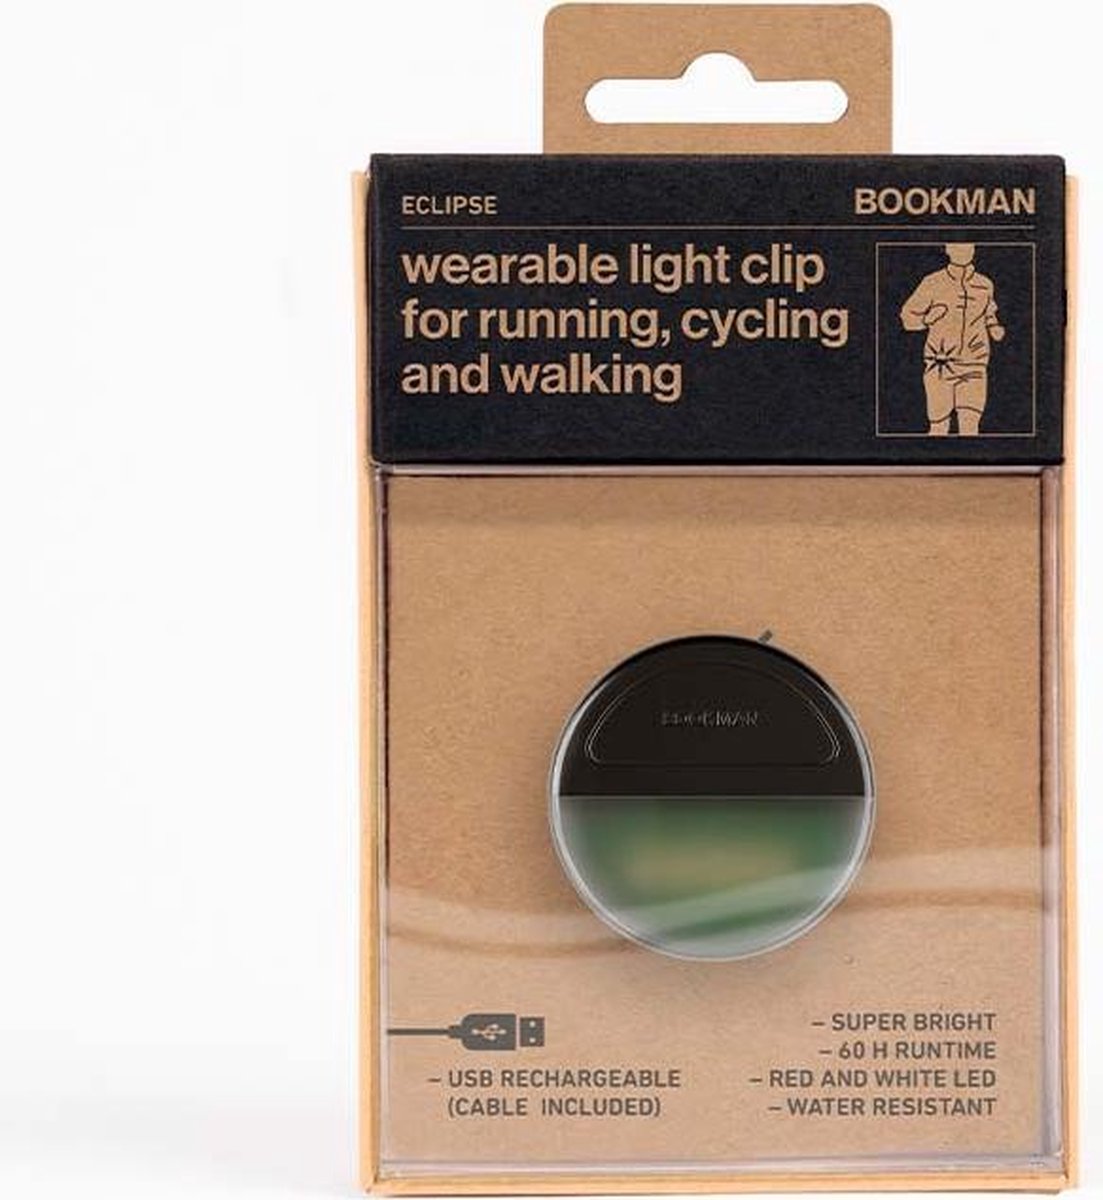 Bookman Eclipse Fietsverlichting - LED Voorlicht / Achterlicht - Oplaadbaar via USB - Compact Design - Waterproof - Zwart